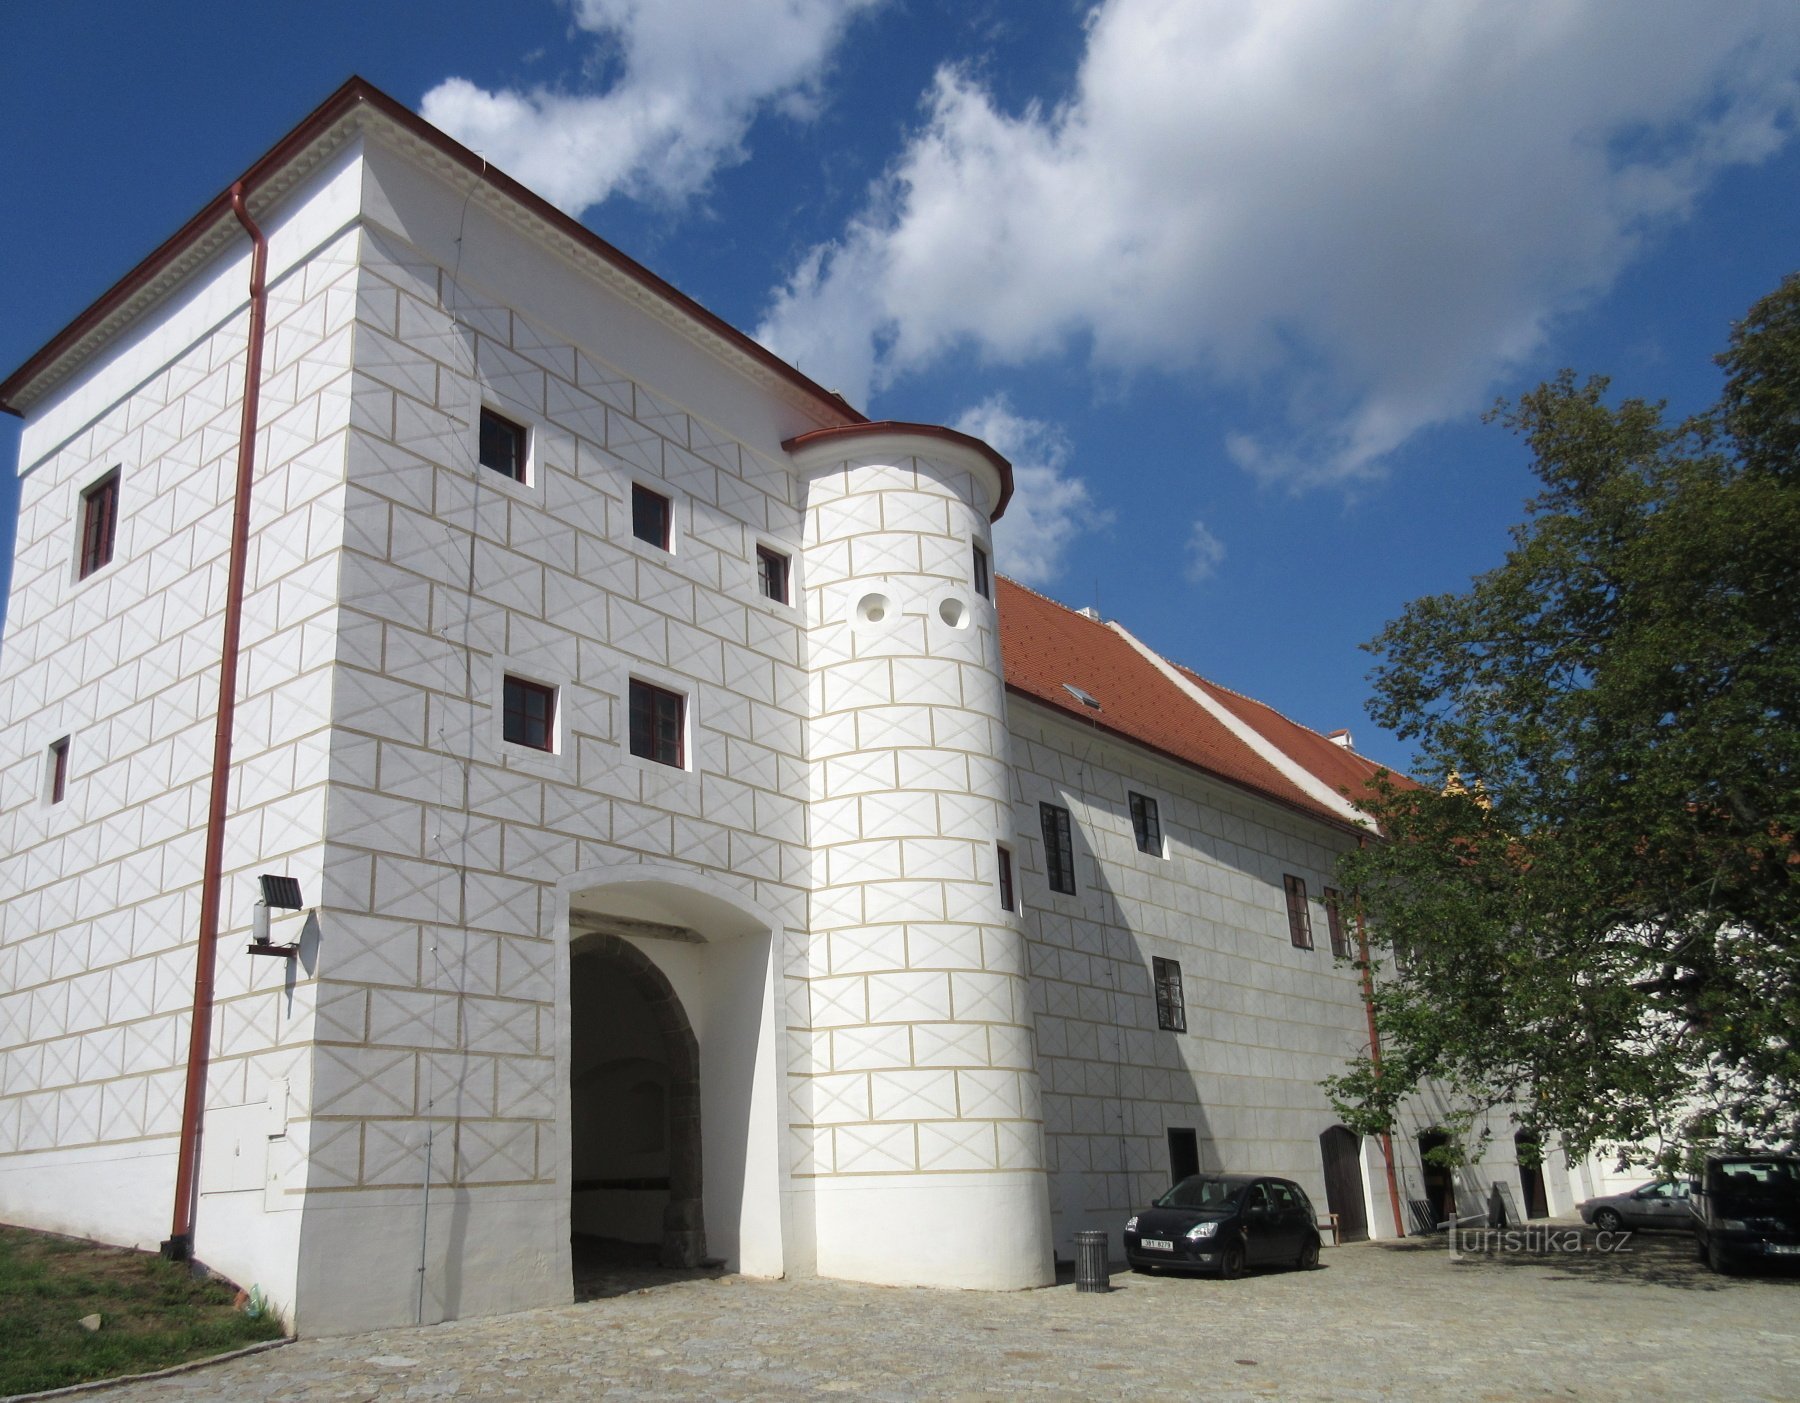 Třebíč – zamek, dawniej klasztor benedyktynów, obecnie muzeum